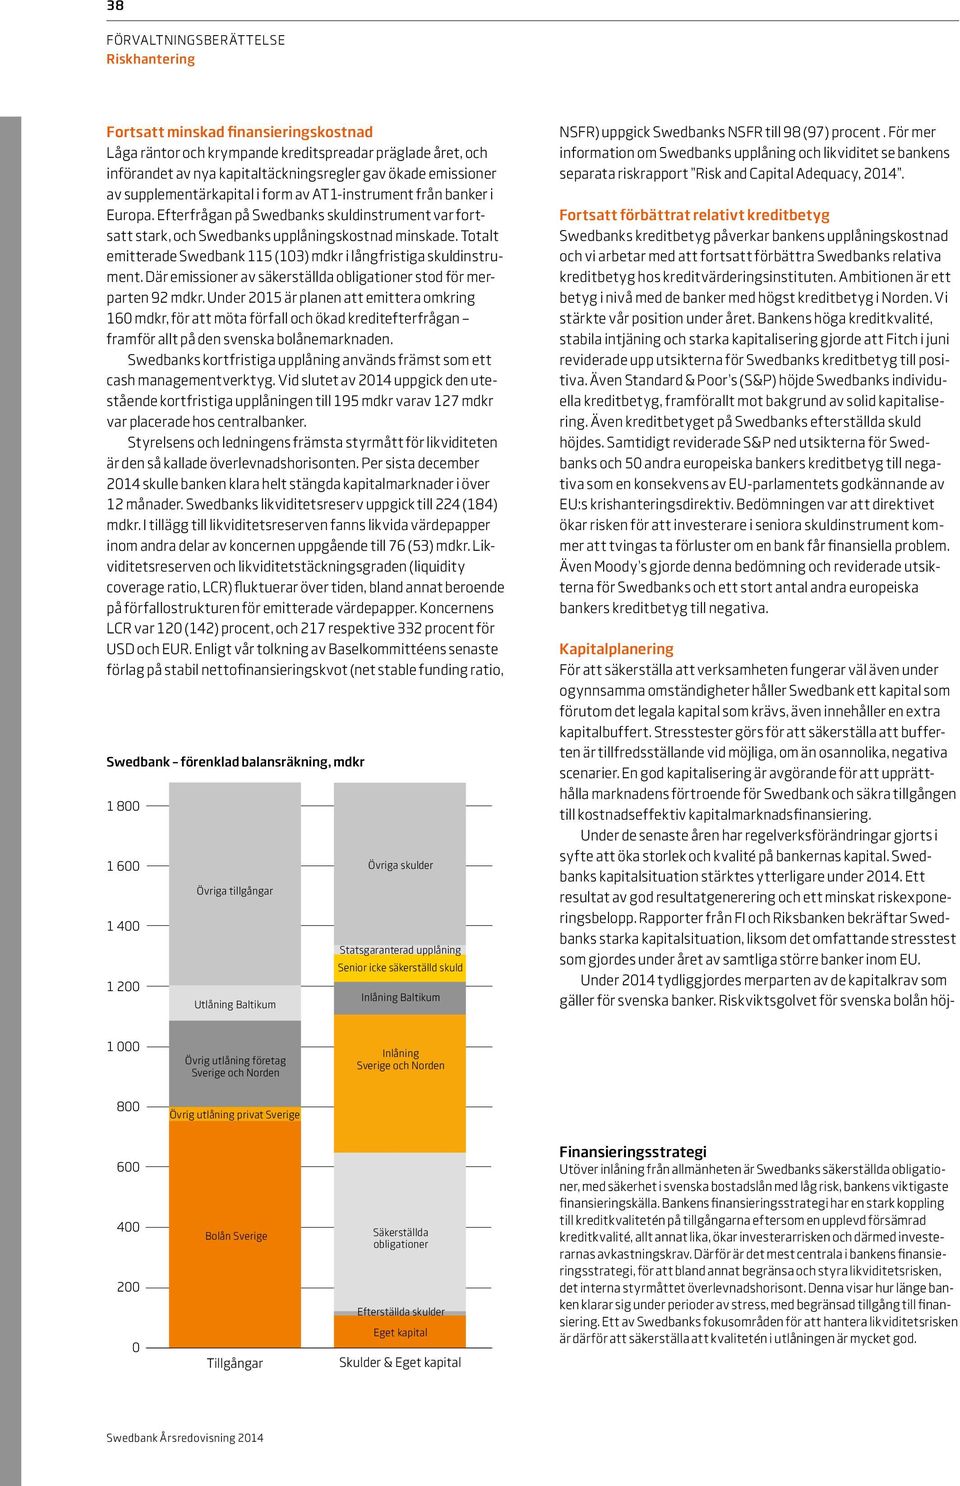 Totalt emitterade Swedbank 115 (103) mdkr i långfristiga skuldinstrument. Där emissioner av säkerställda obligationer stod för merparten 92 mdkr.